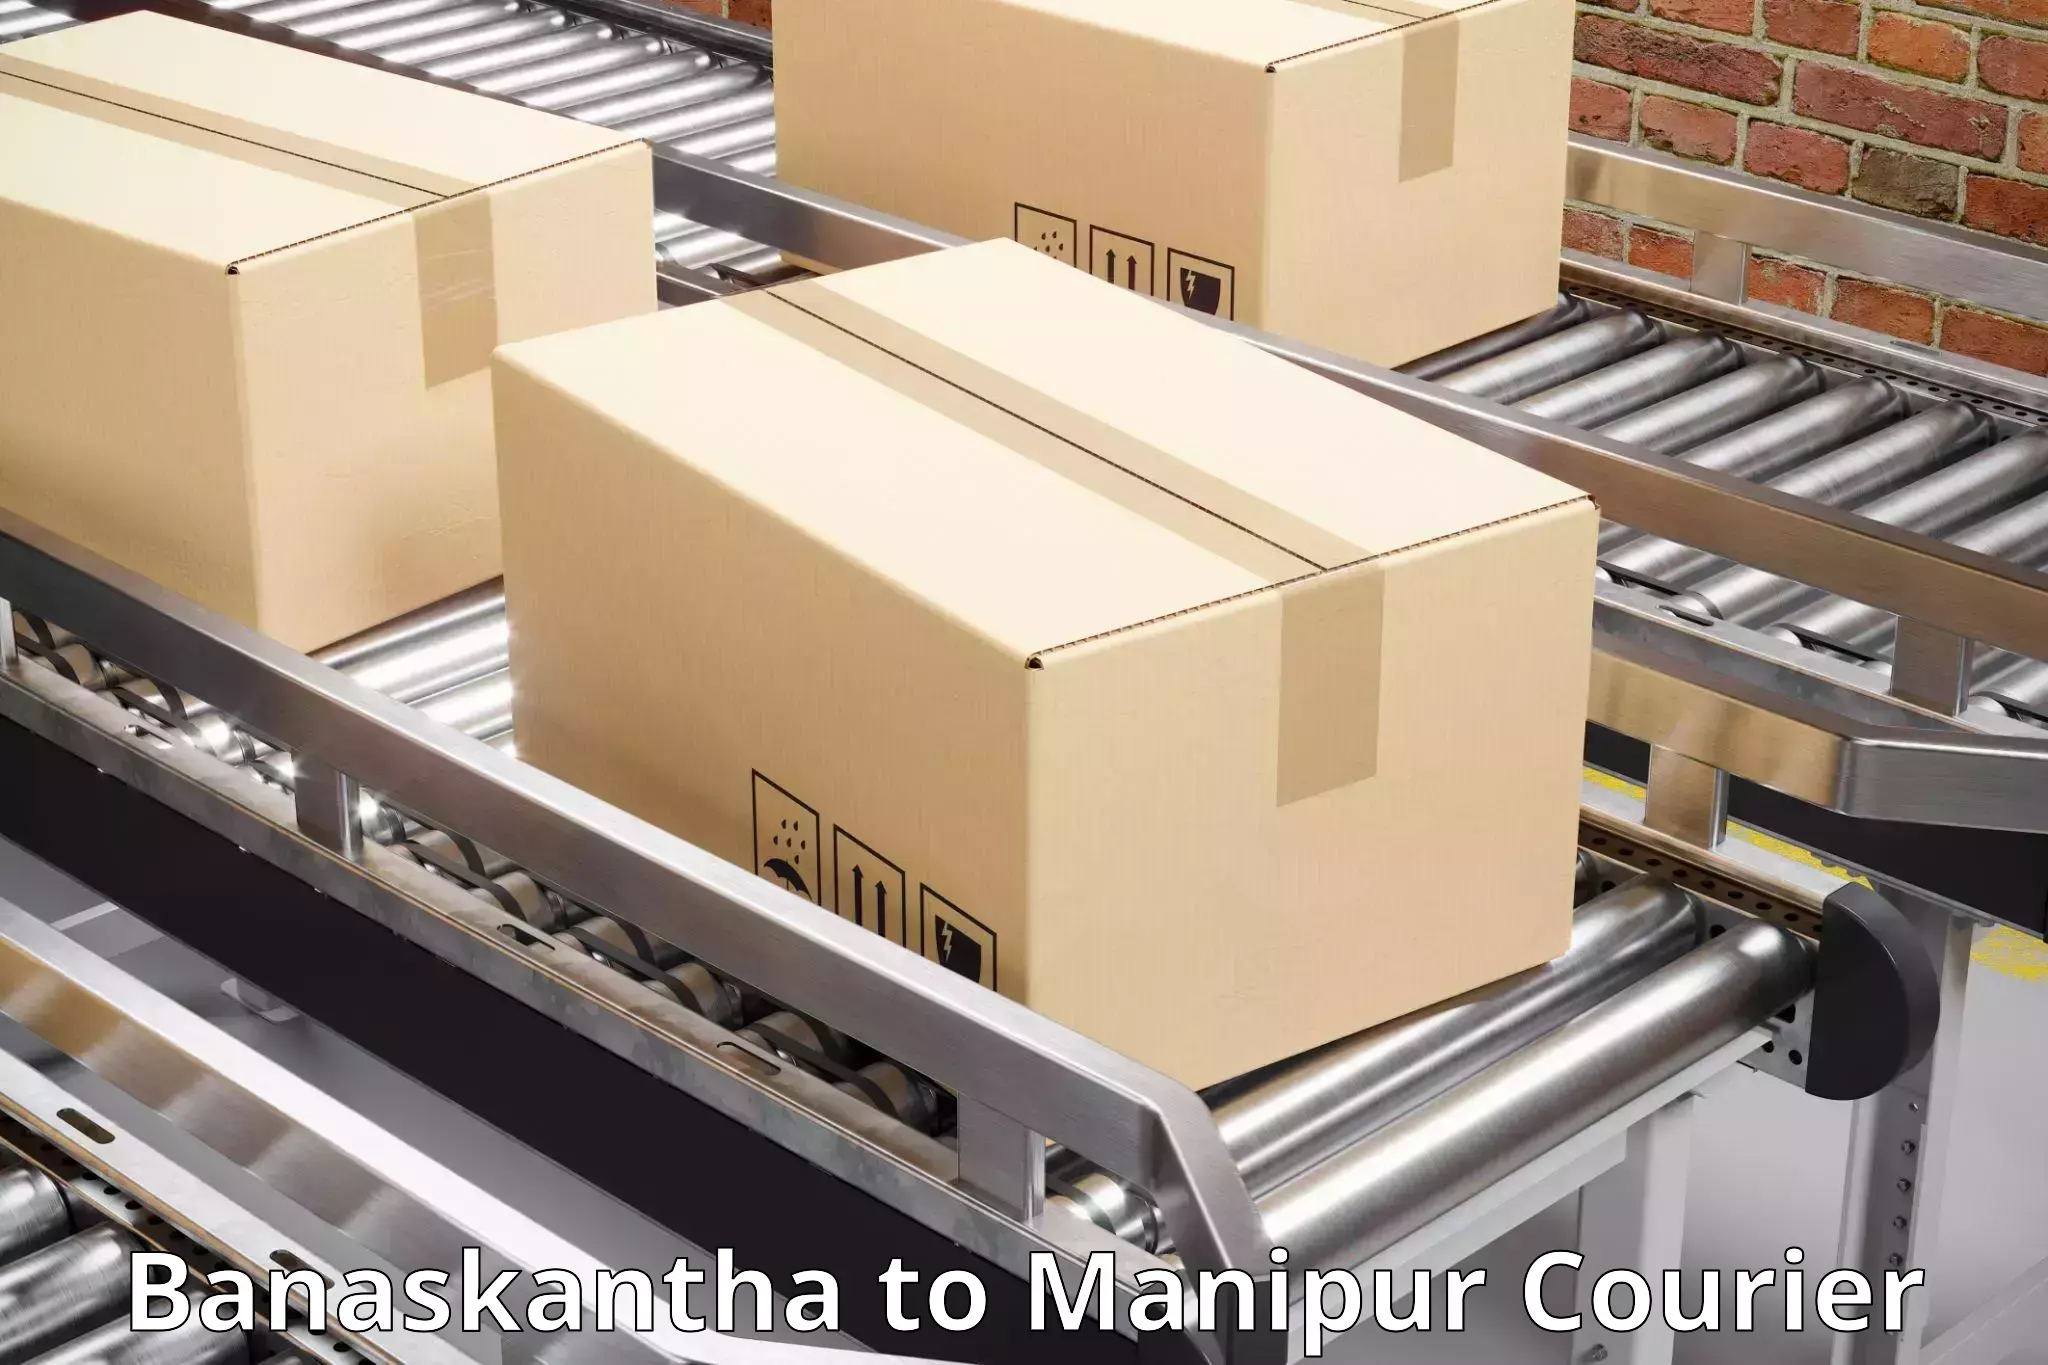 Parcel service for businesses Banaskantha to Imphal